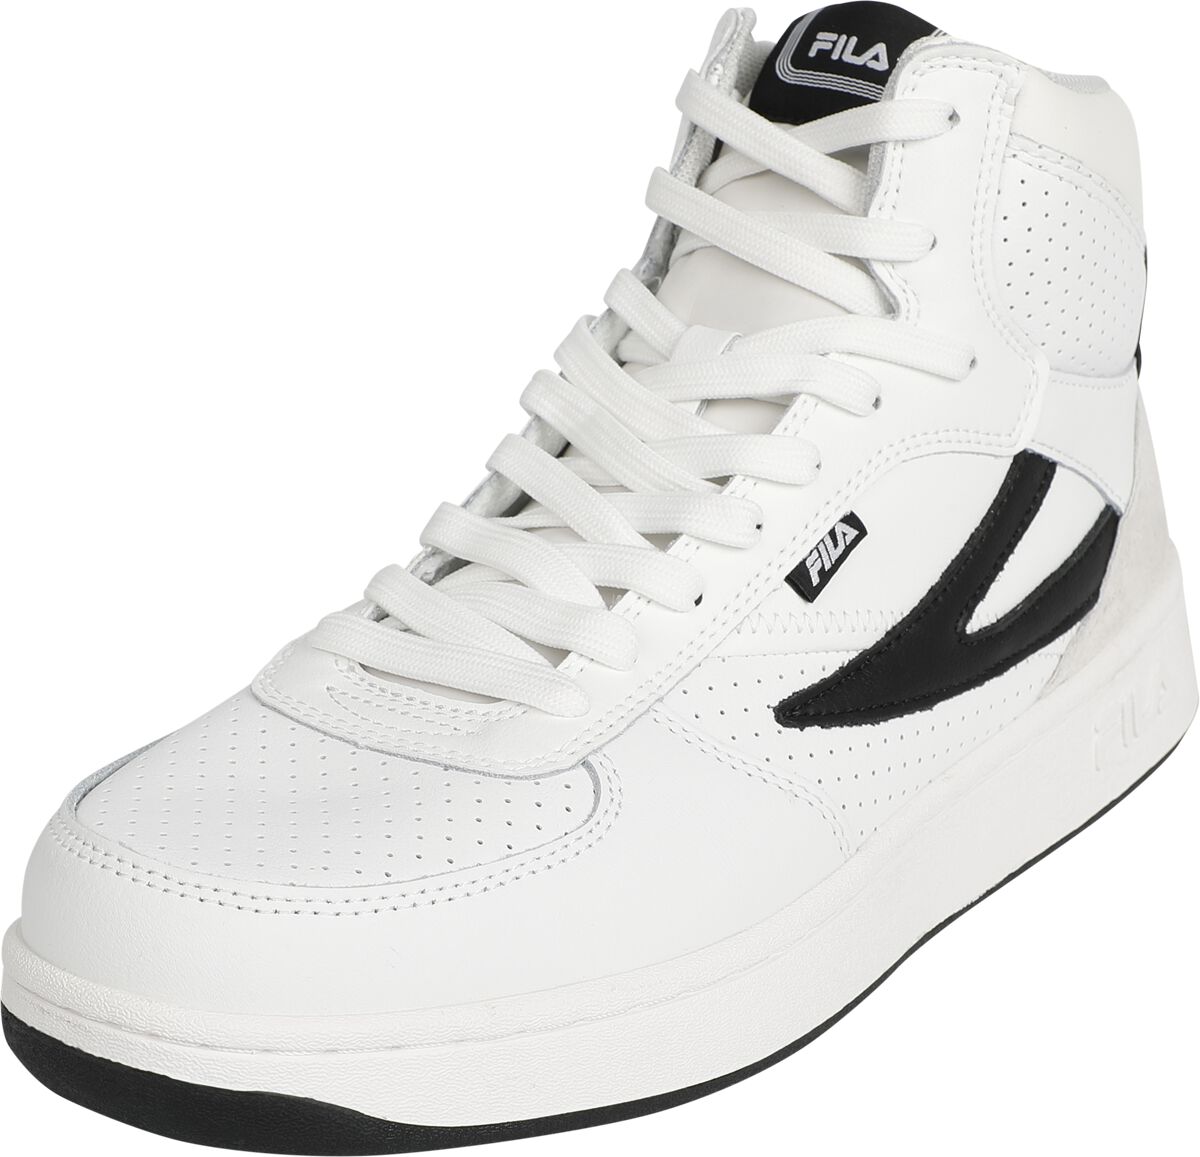 Fila FILA SEVARO mid Sneaker high weiß schwarz in EU45